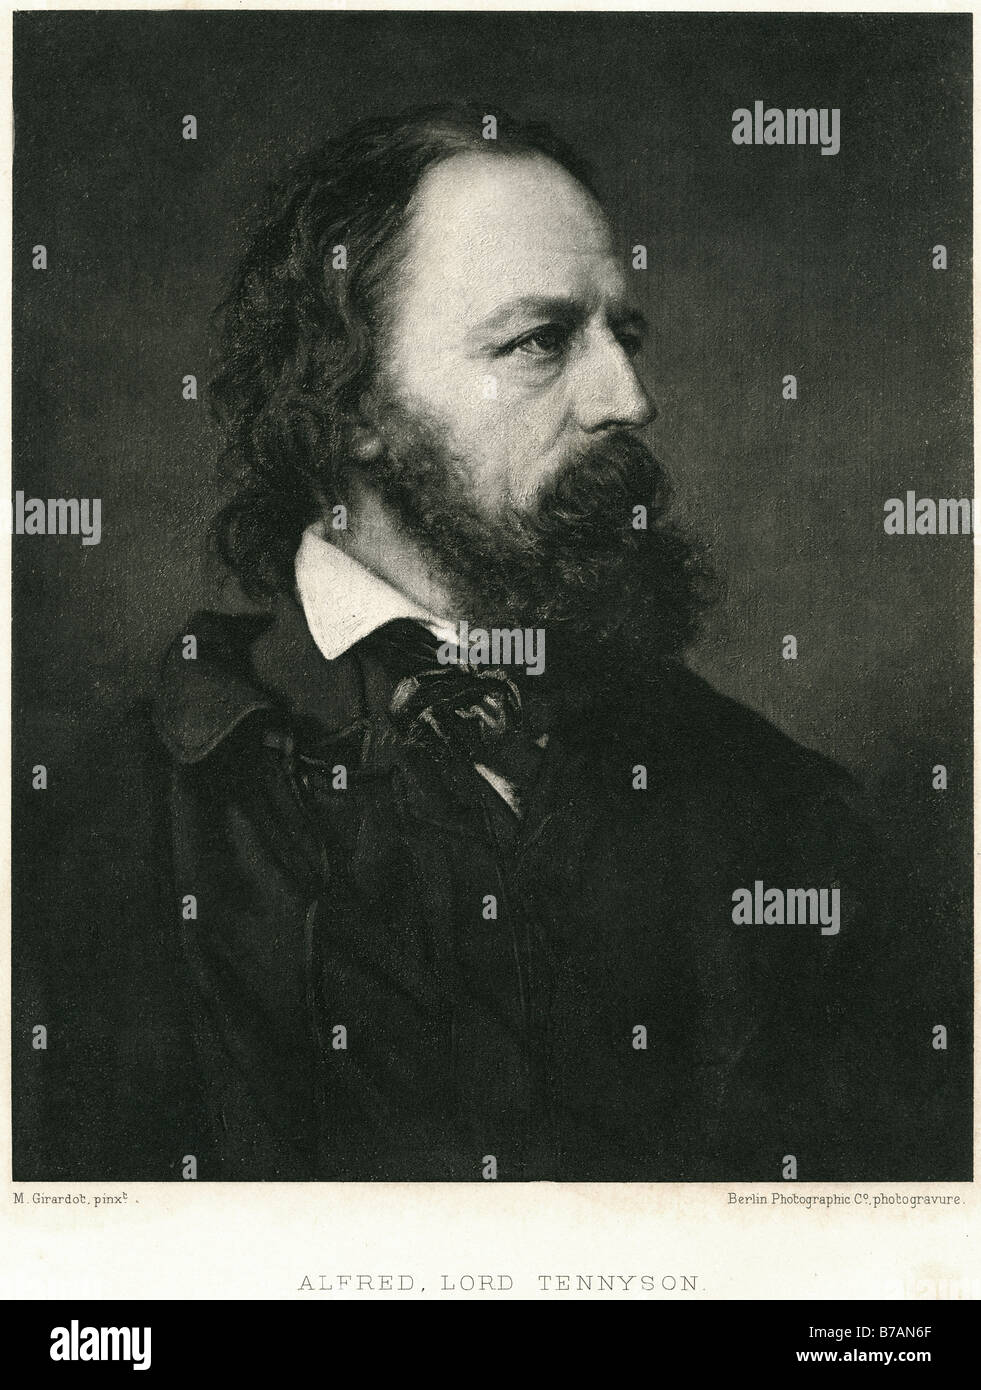 1r barón ALFRED TENNYSON Tennyson 6 de agosto de 1809 - 6 de octubre de 1892 fue poeta laureado poeta inglés Reino Unido popular Tennyso Foto de stock